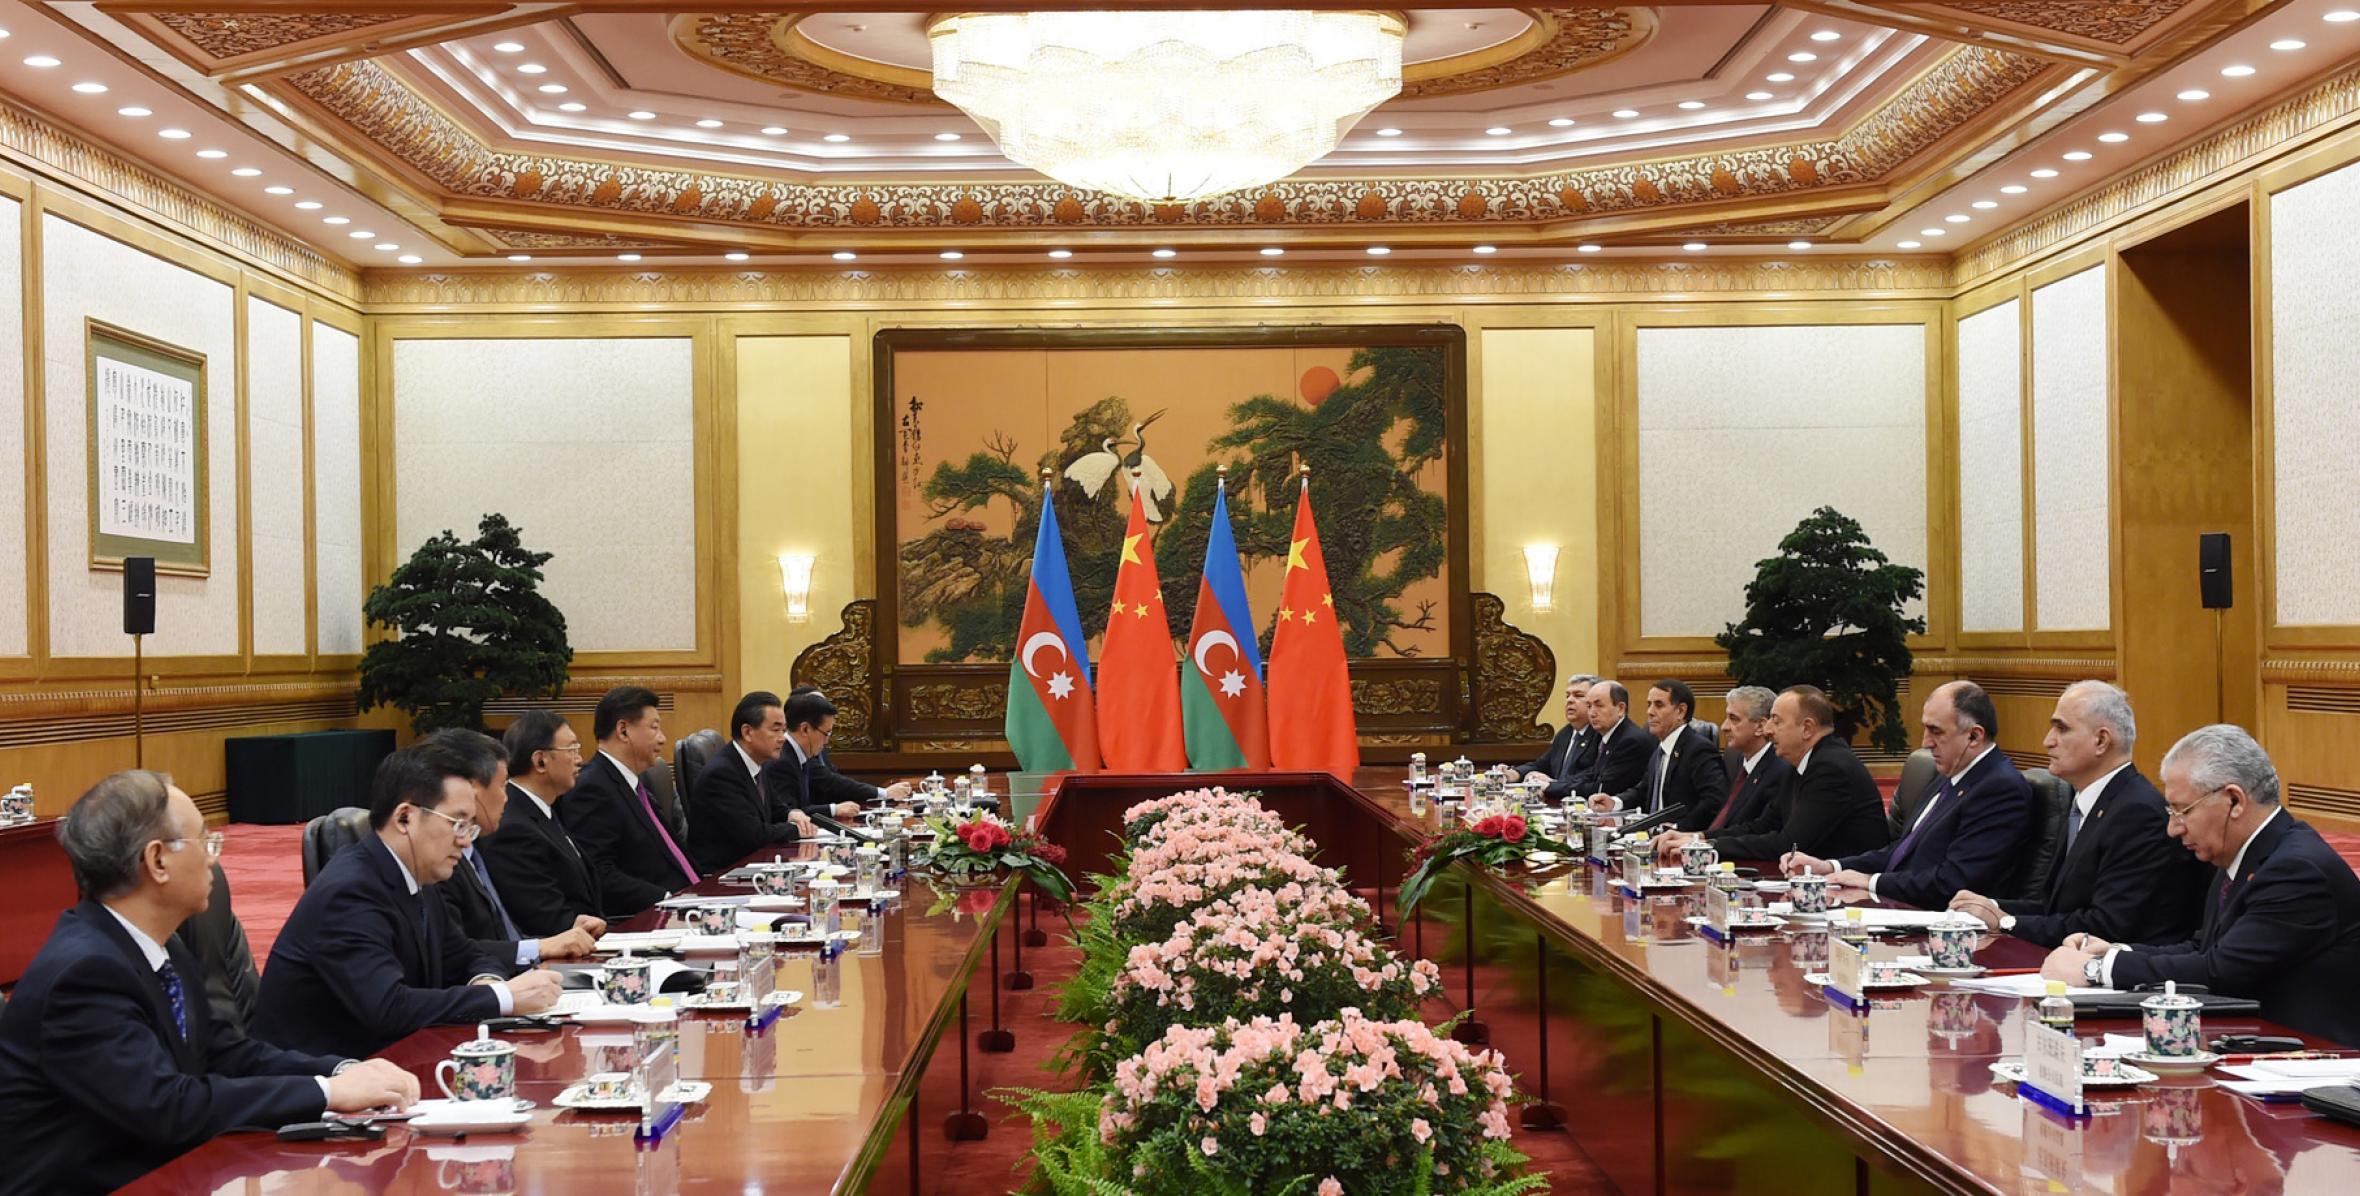 Состоялась встреча Ильхама Алиева с Председателем Китайской Народной Республики Си Цзиньпином в расширенном составе